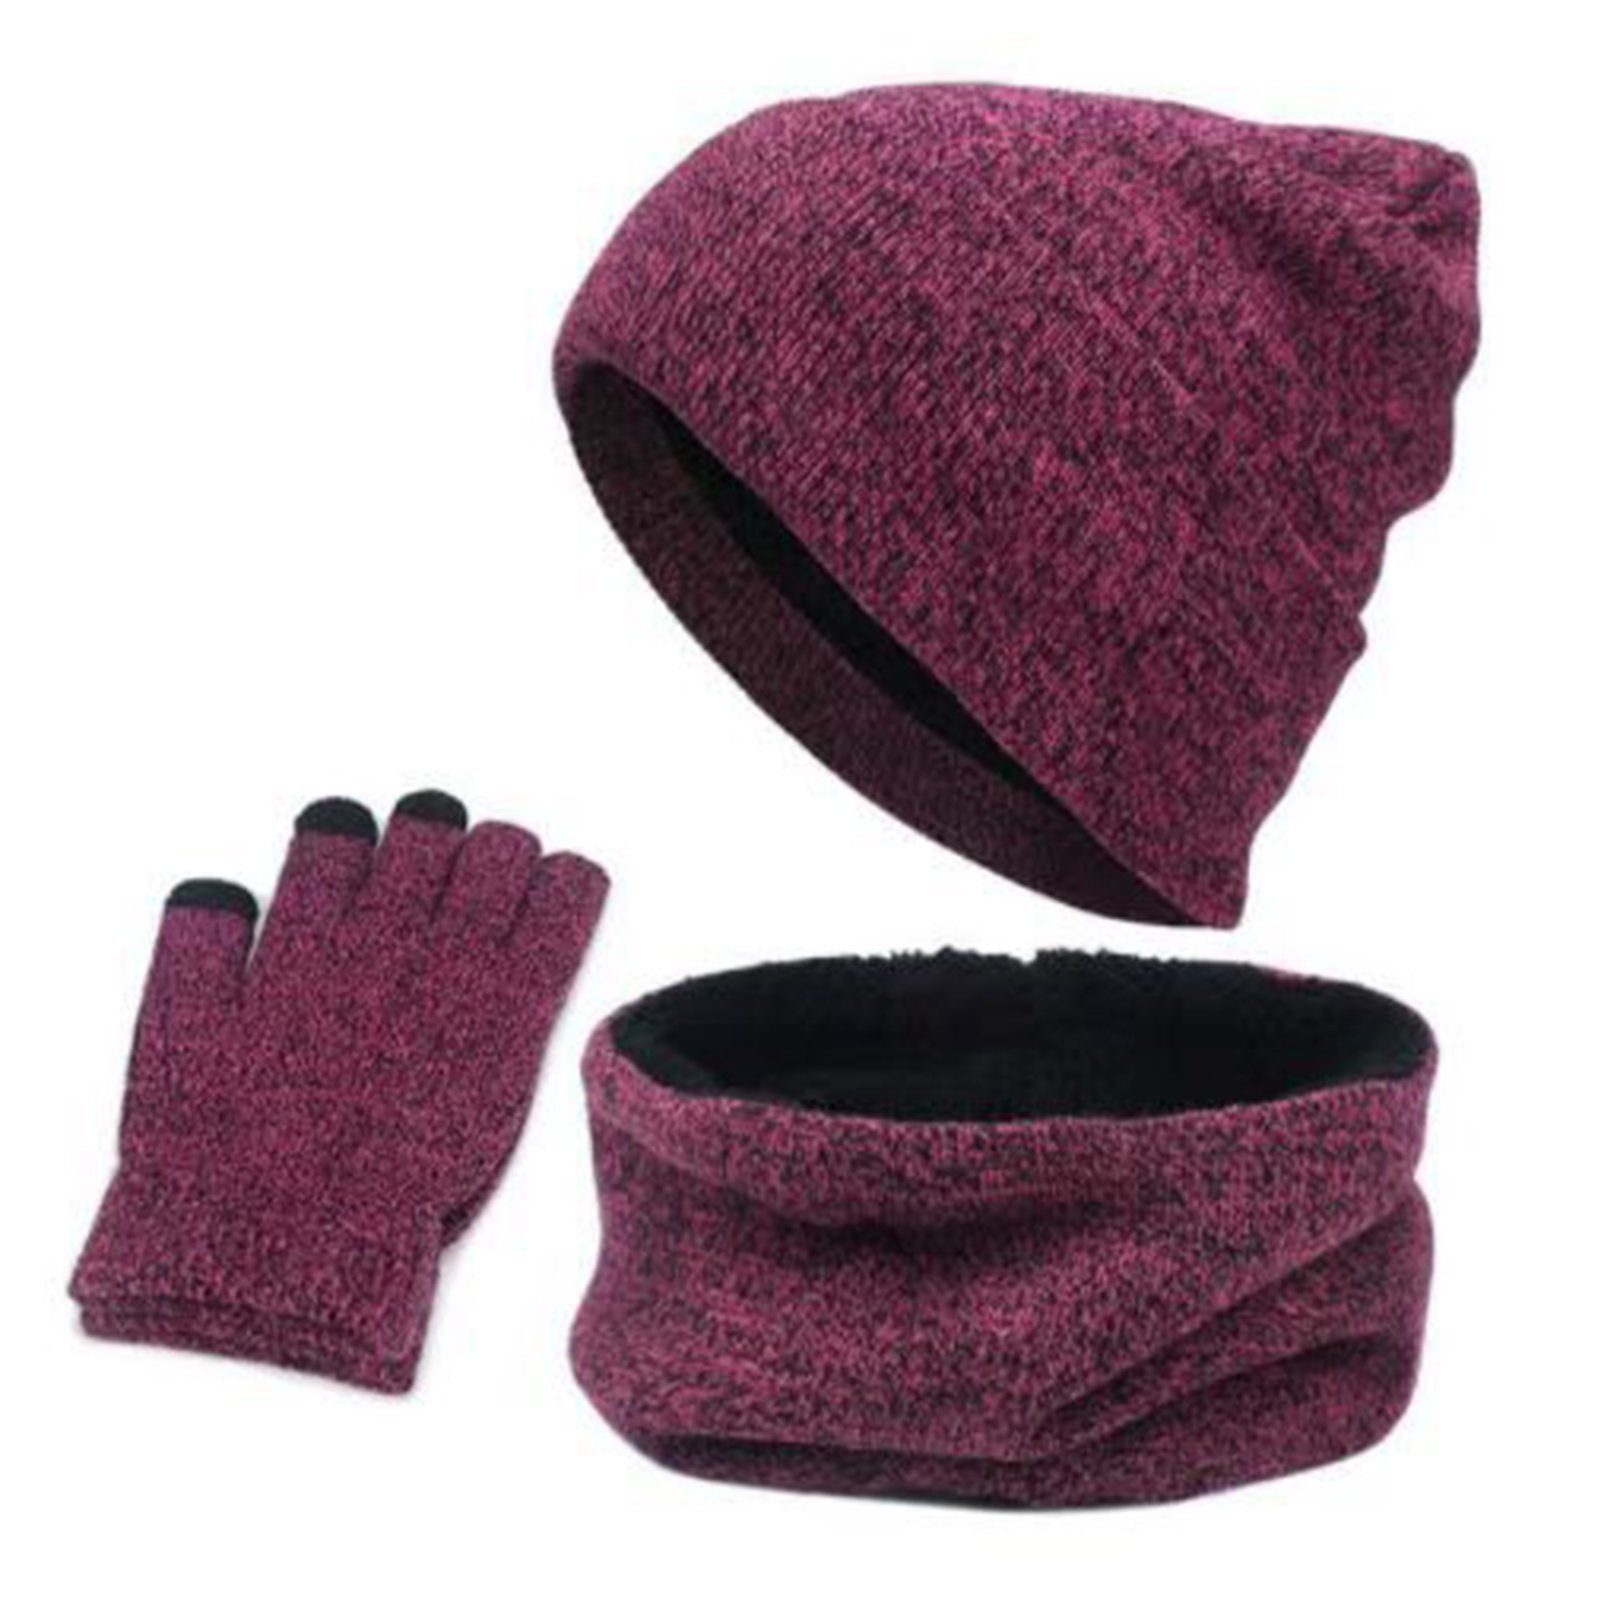 LENBEST Beanie Strickmütze Herren Damen 3 in 1 Touchscreen Handschuhe und Schal Set Warme Winter Mütze mit Fleece Innenfutter Unisex (Einheitsgröße) lila